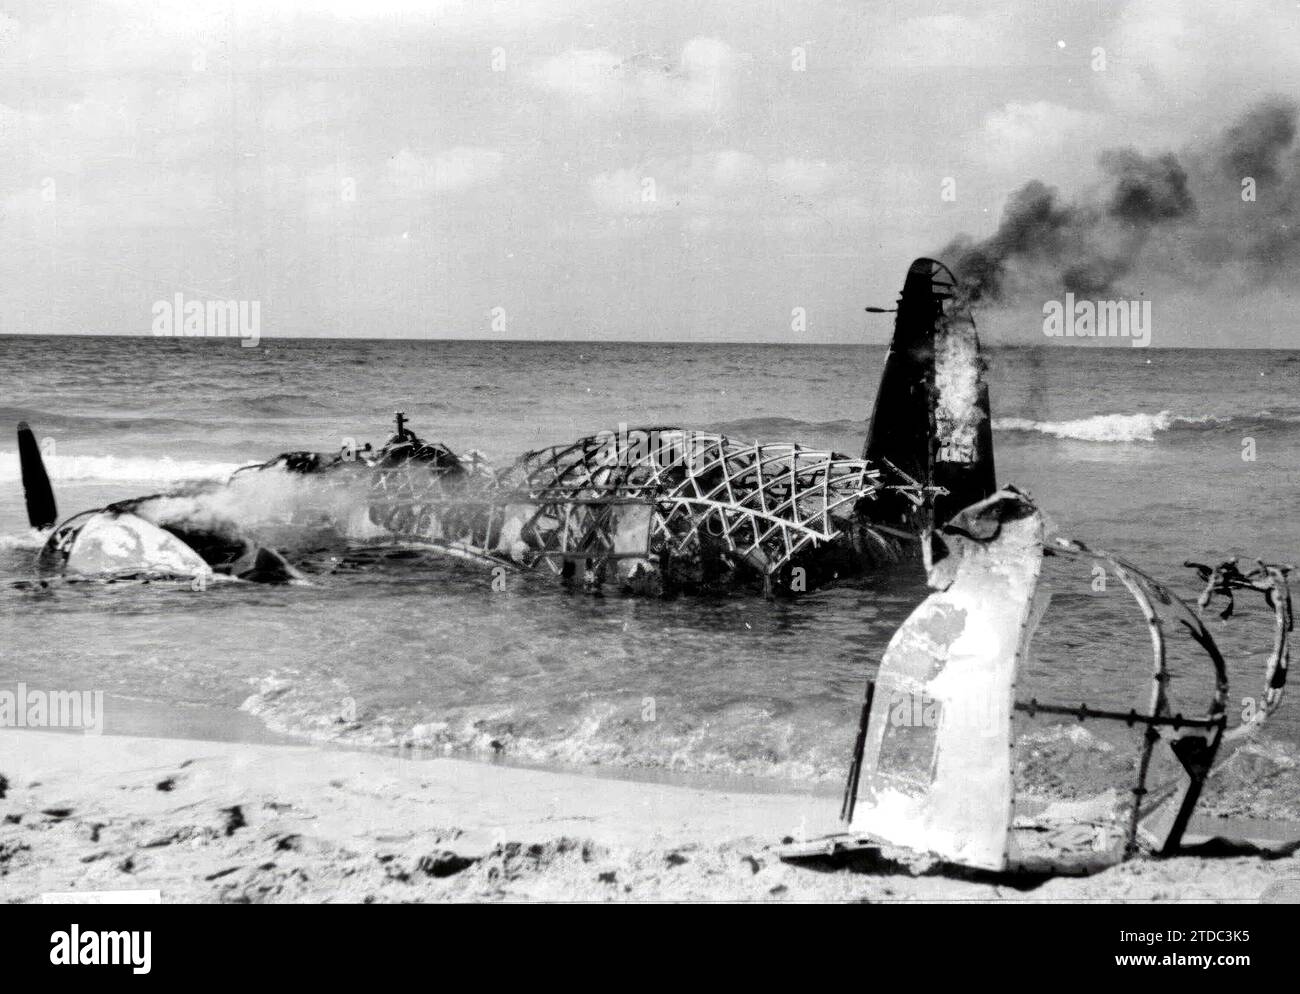 Tobruk (Nordafrika). September 1941. Überreste eines englischen Flugzeugs, das von den Italienern abgeschossen wurde. Quelle: Album/Archivo ABC Stockfoto